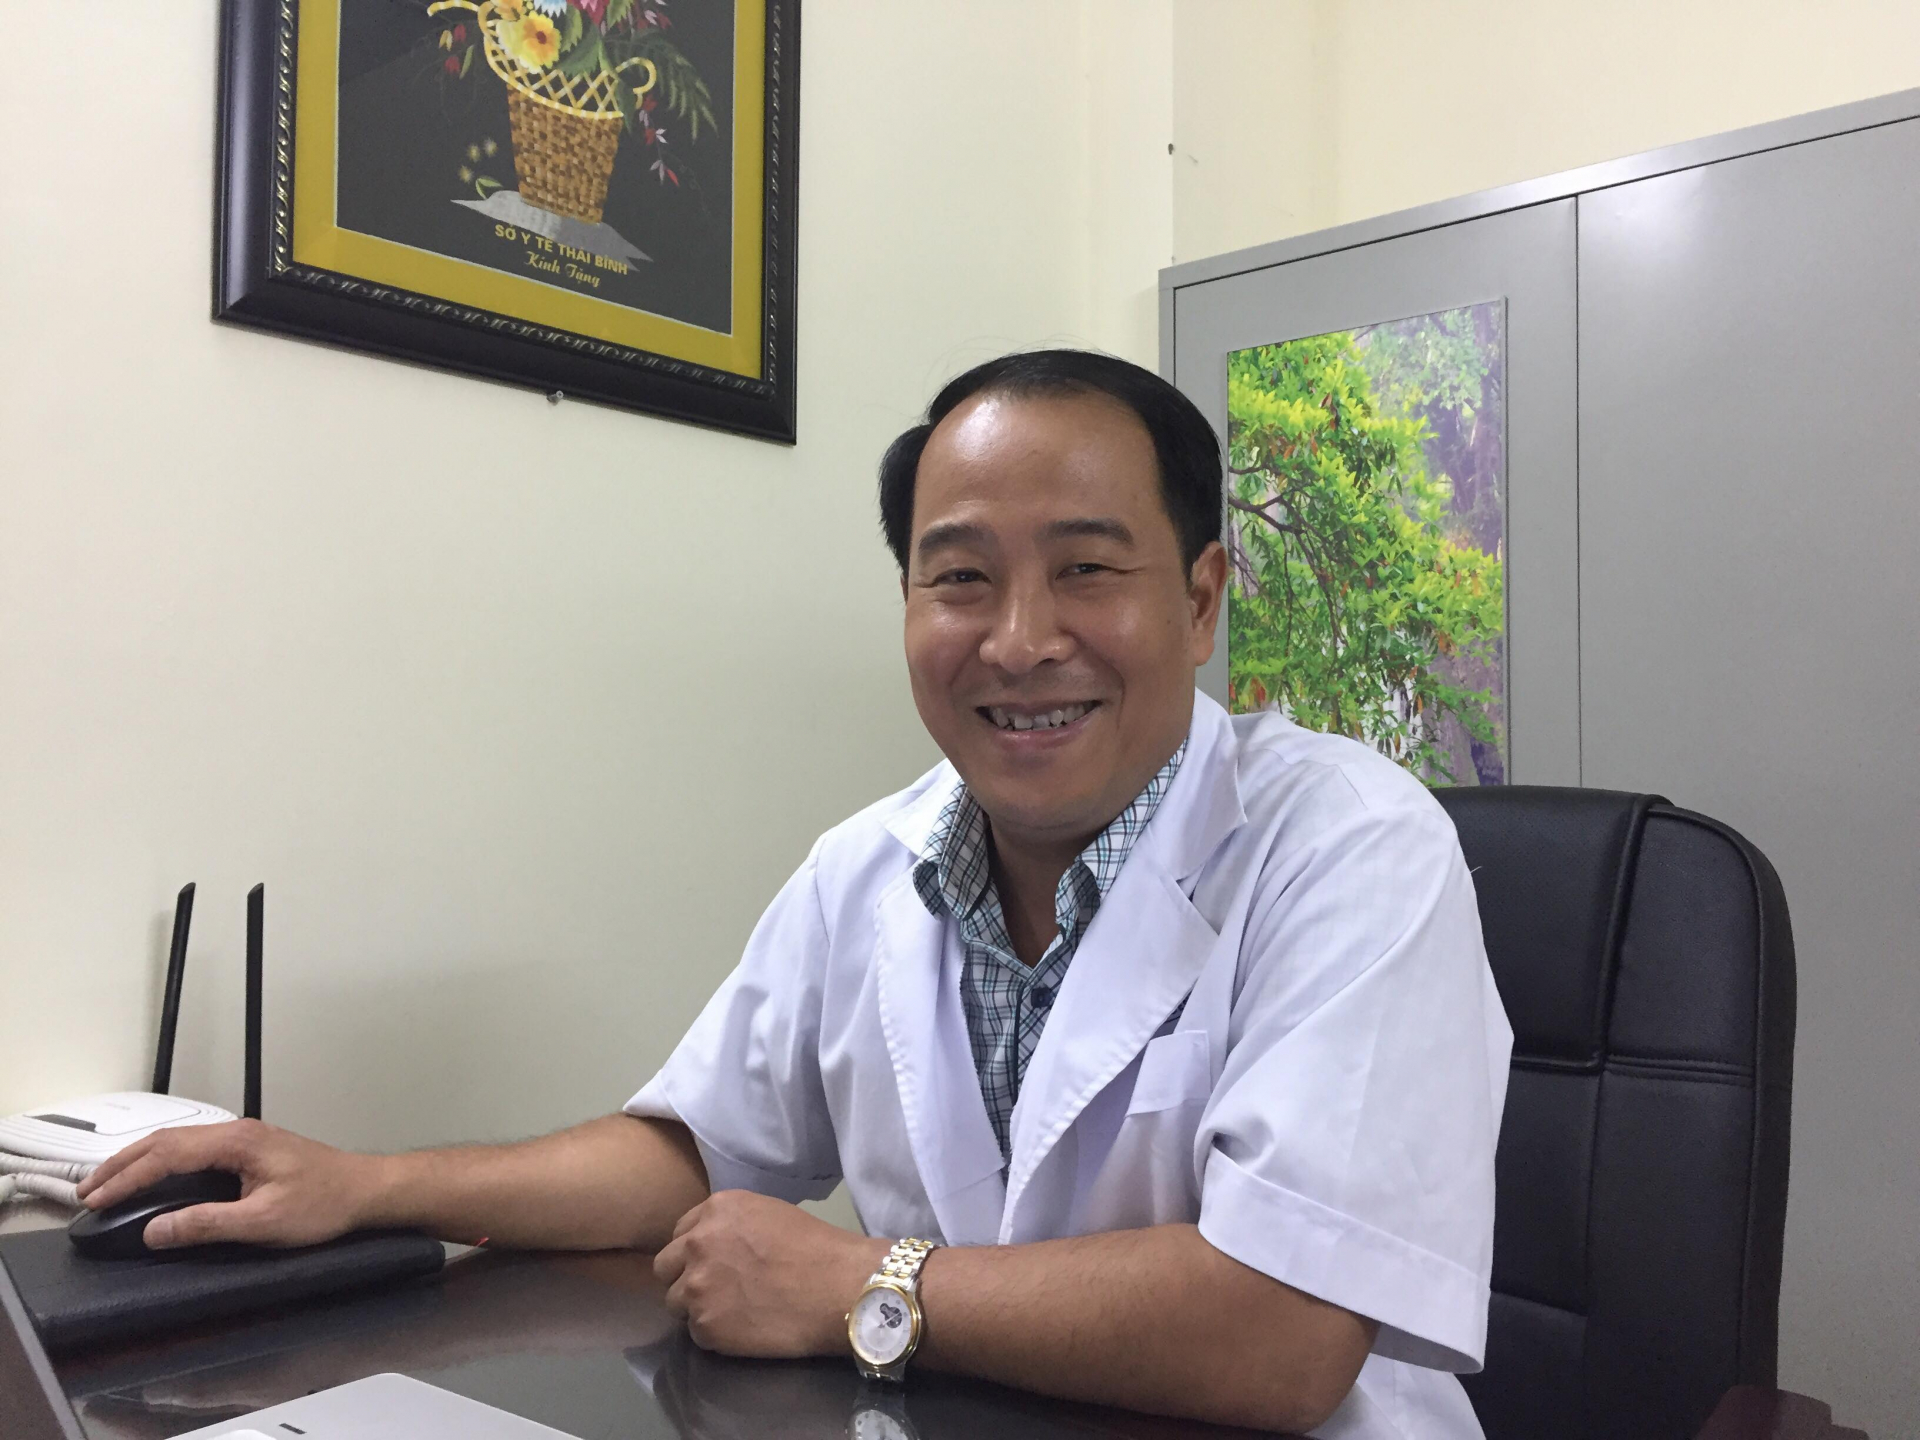   Bác sĩ Trần Anh Thắng, Phó giám đốc Trung tâm Cấp cứu 115 Hà Nội  